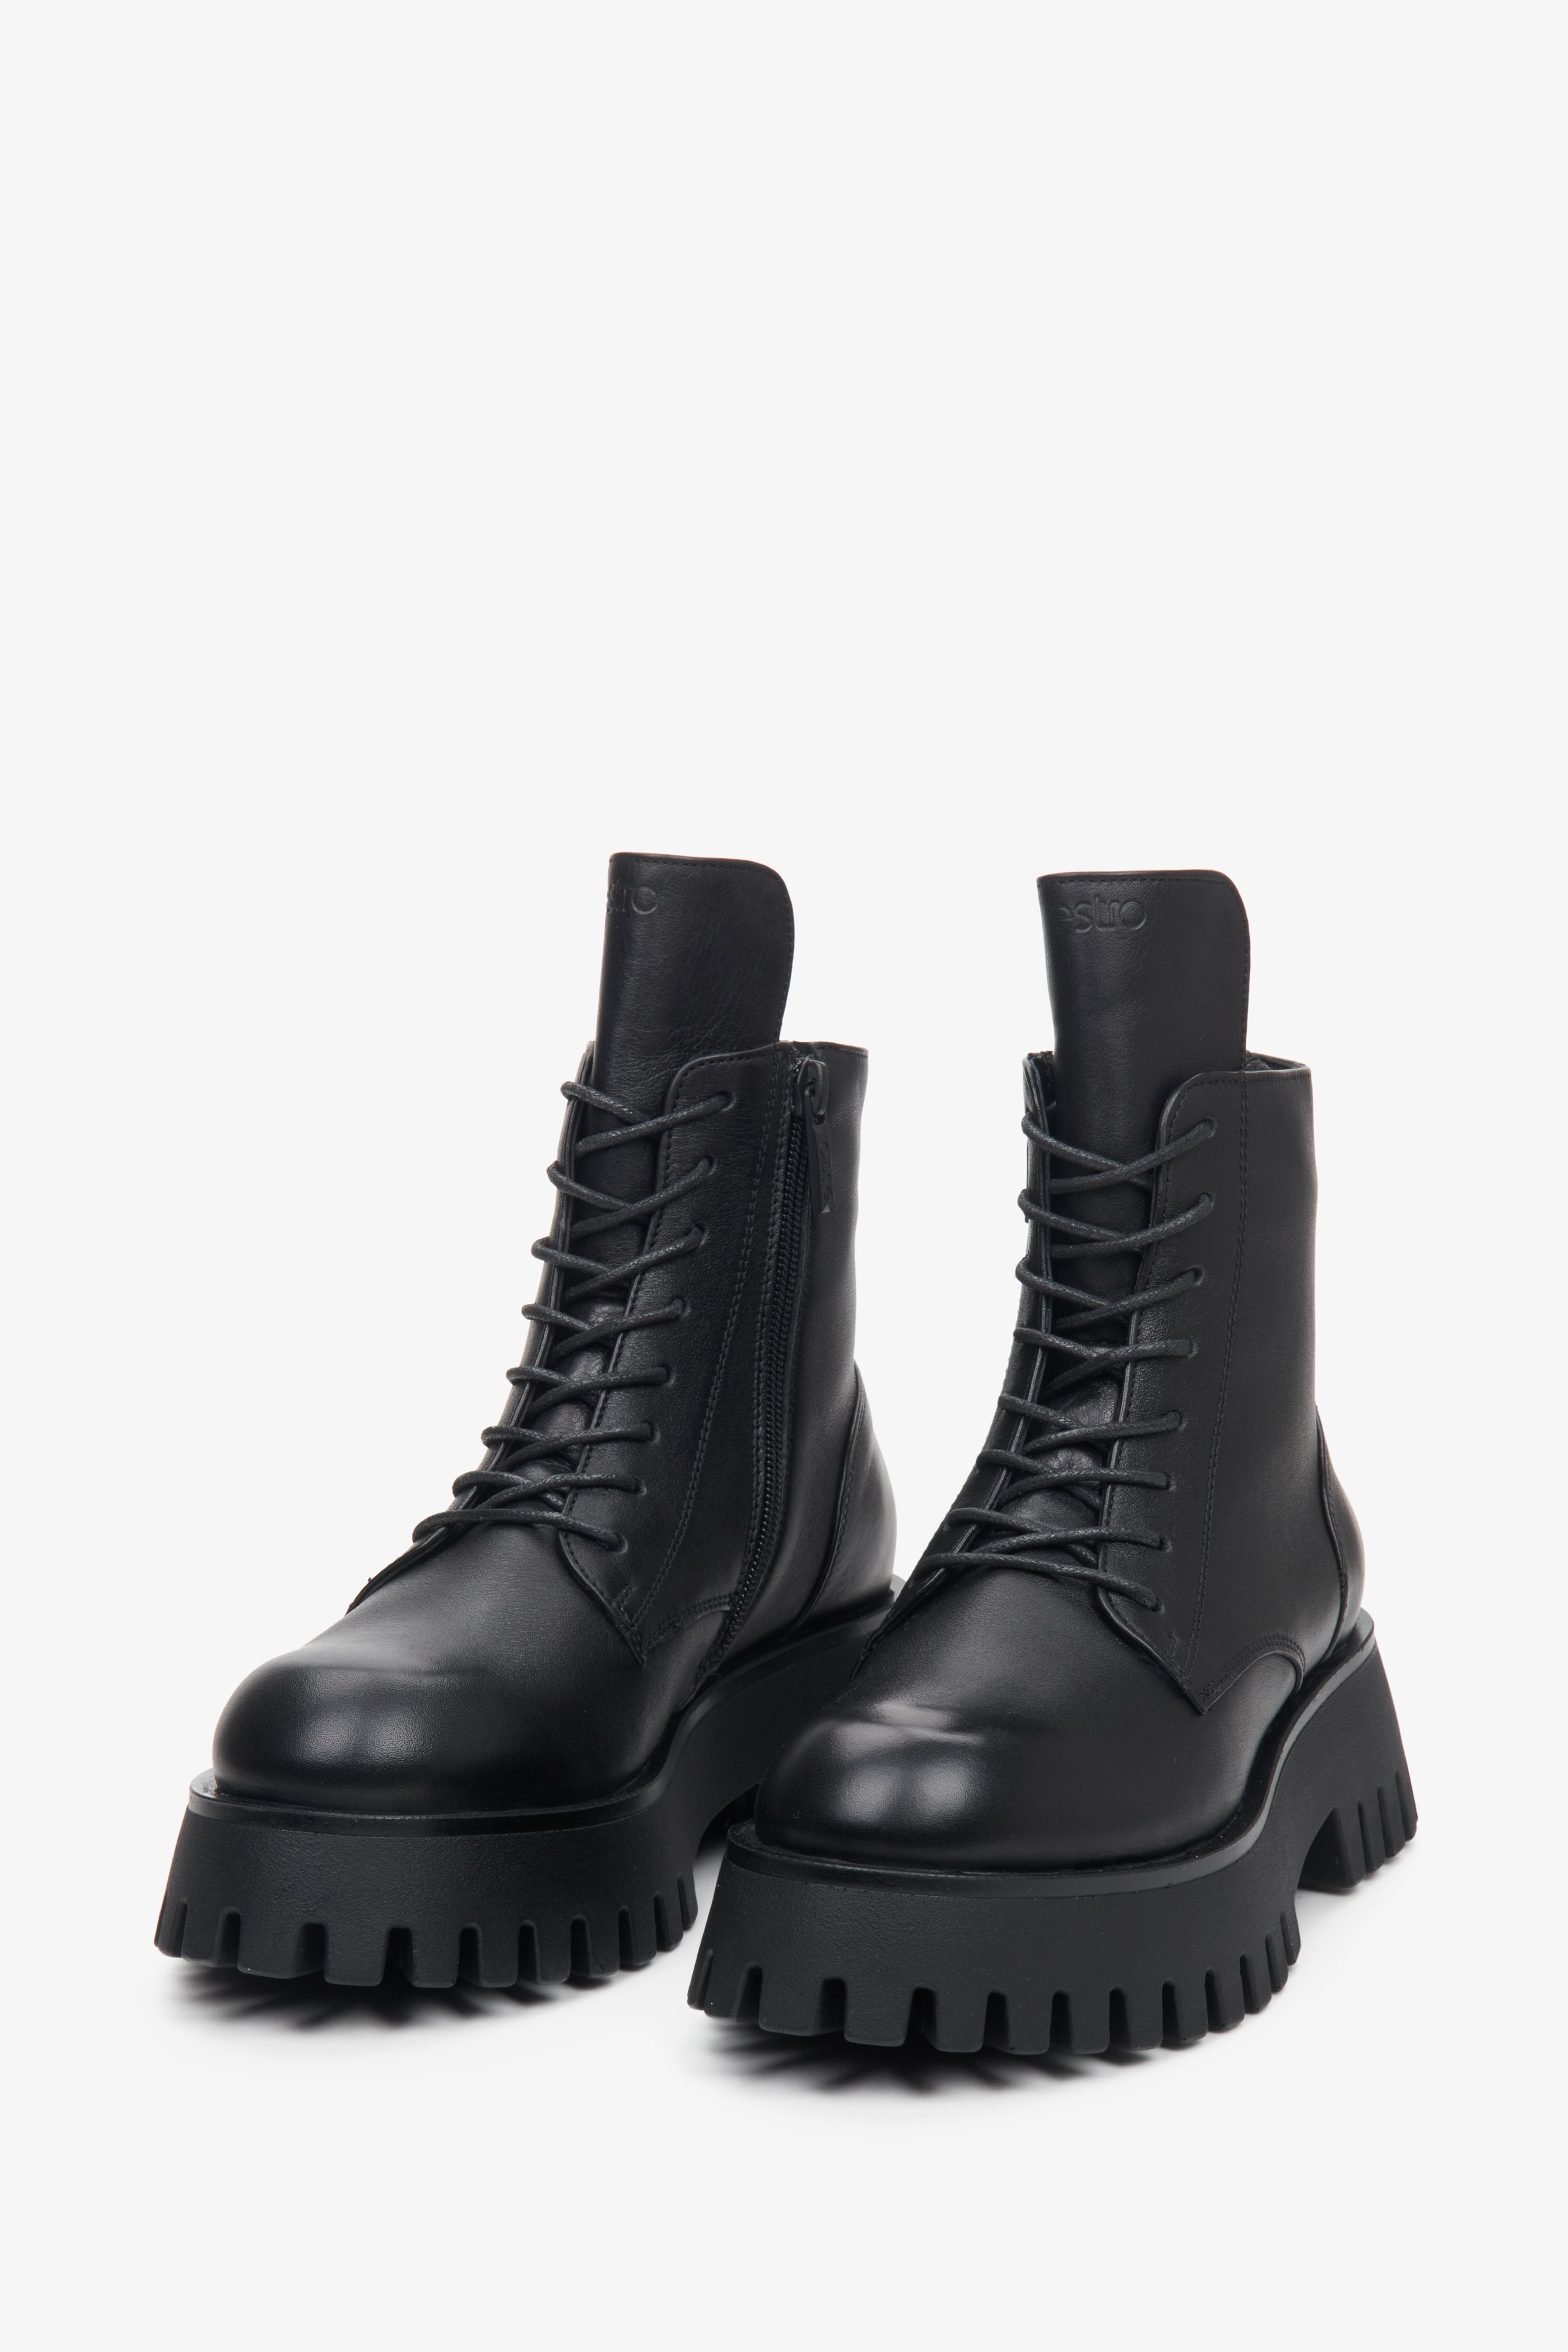 Damskie botki skórzane w kolorze czarnym marki Estro - zbliżenie na przednią część buta.